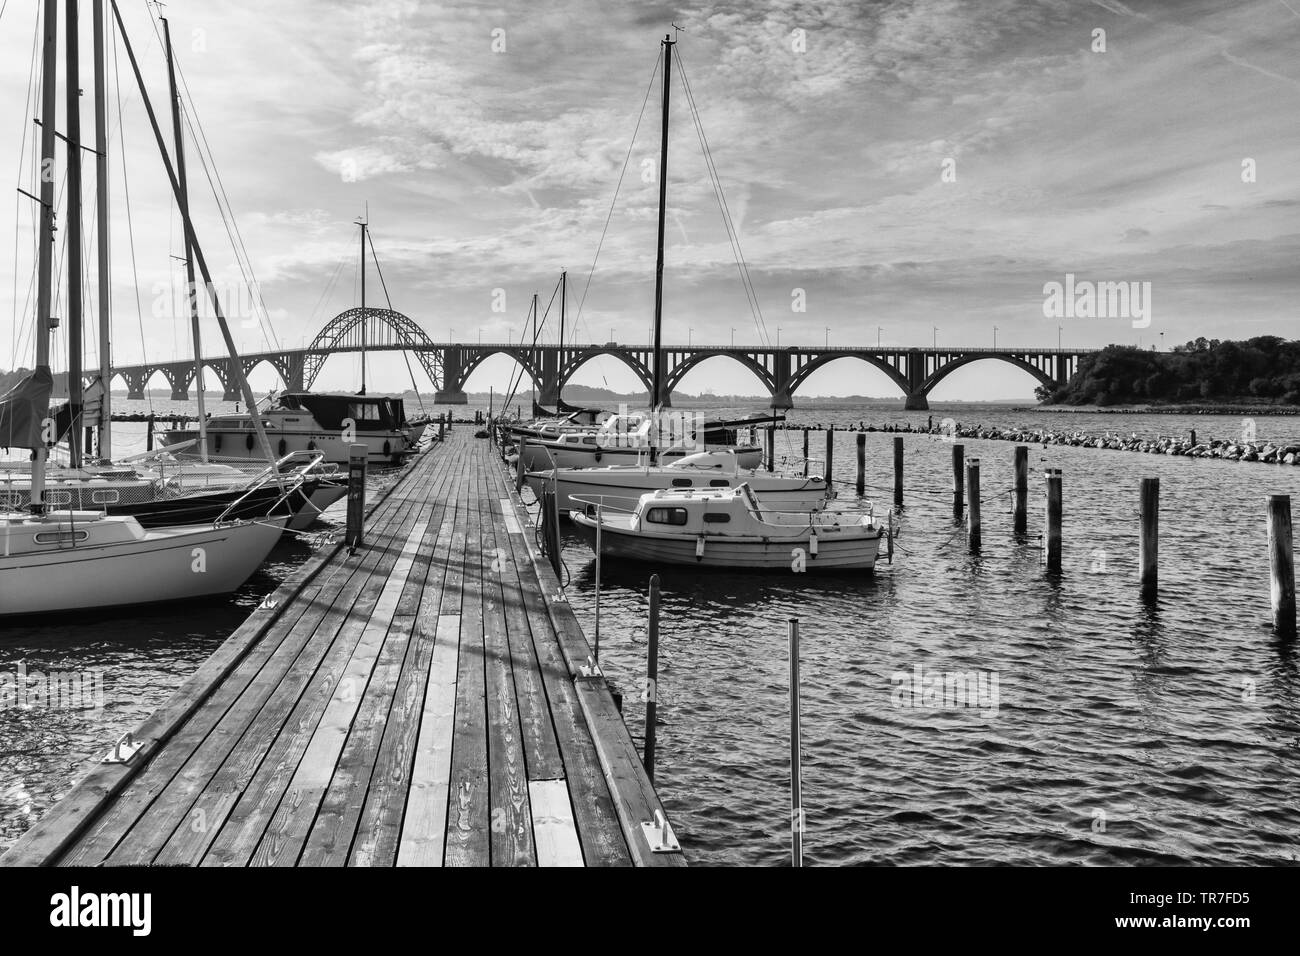 Paisajes en blanco y negro de la marina de Kalvehave, Dinamarca con el famoso puente de Moen en el fondo Foto de stock